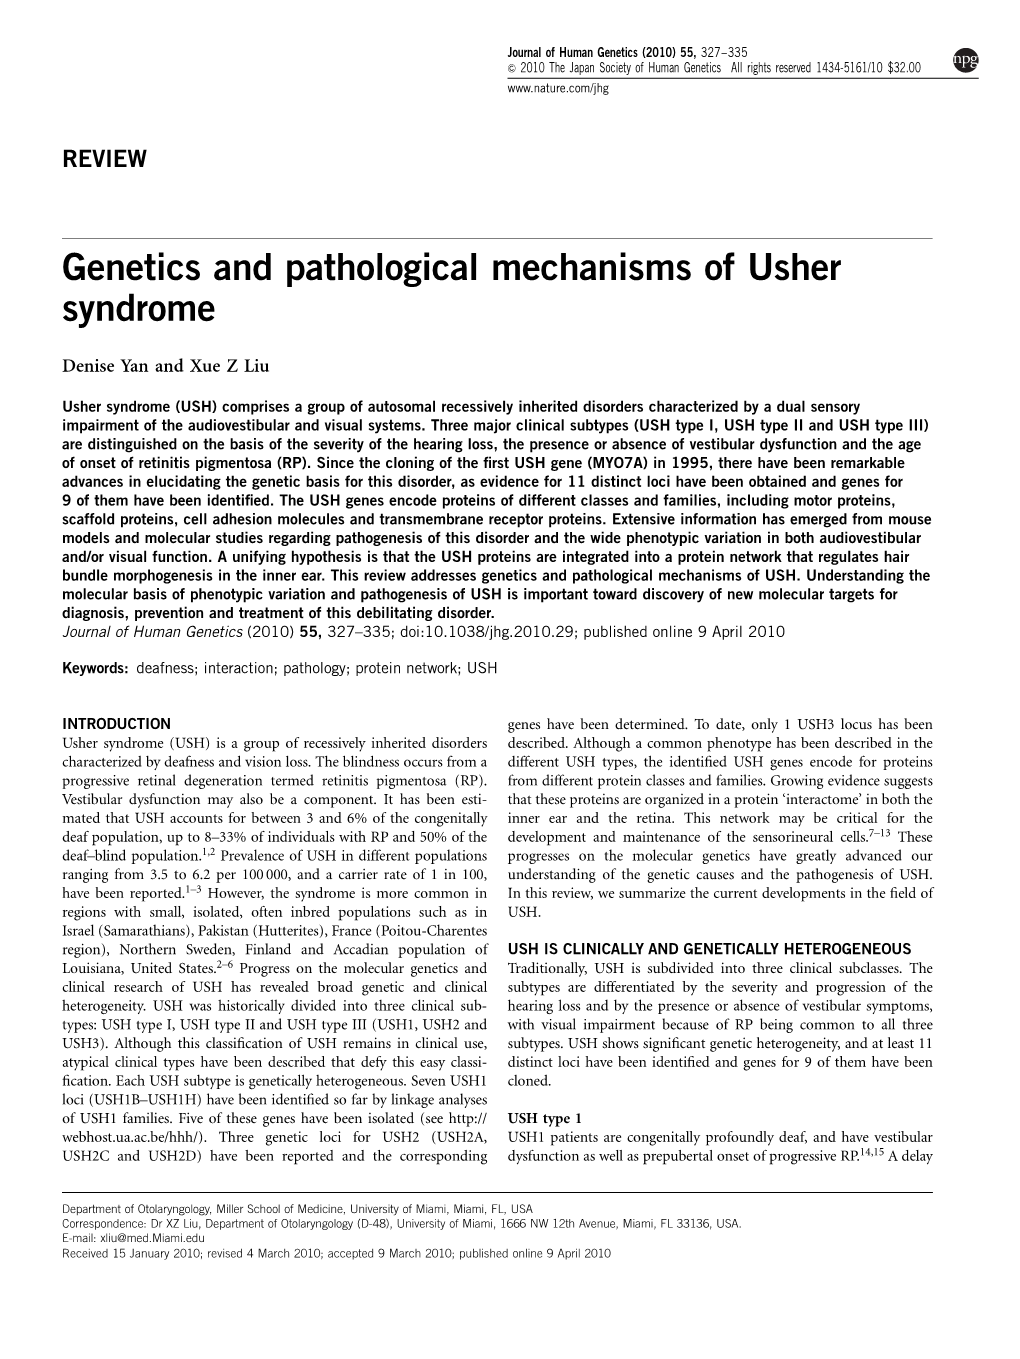 Genetics and Pathological Mechanisms of Usher Syndrome